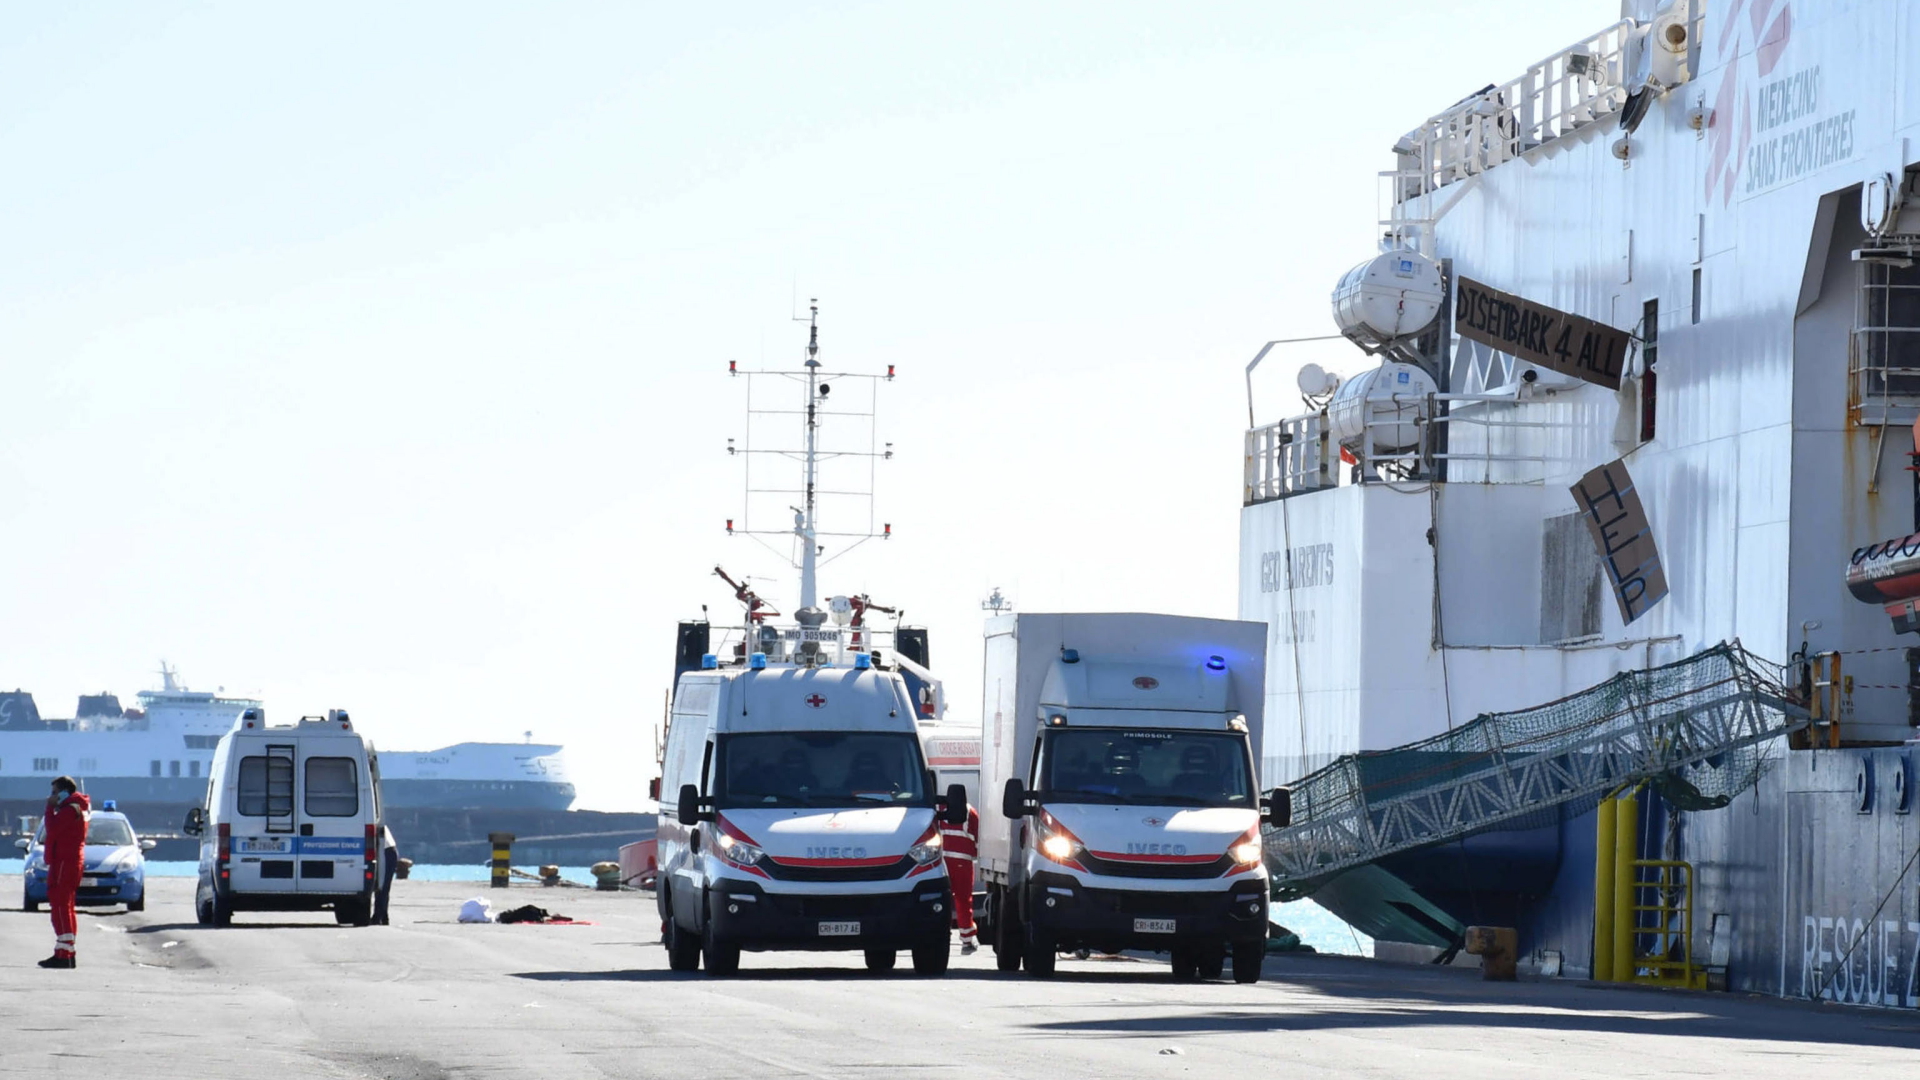 Rettungswagen stehen vor einem Schiff in Sizilien, dass Migranten rettete.